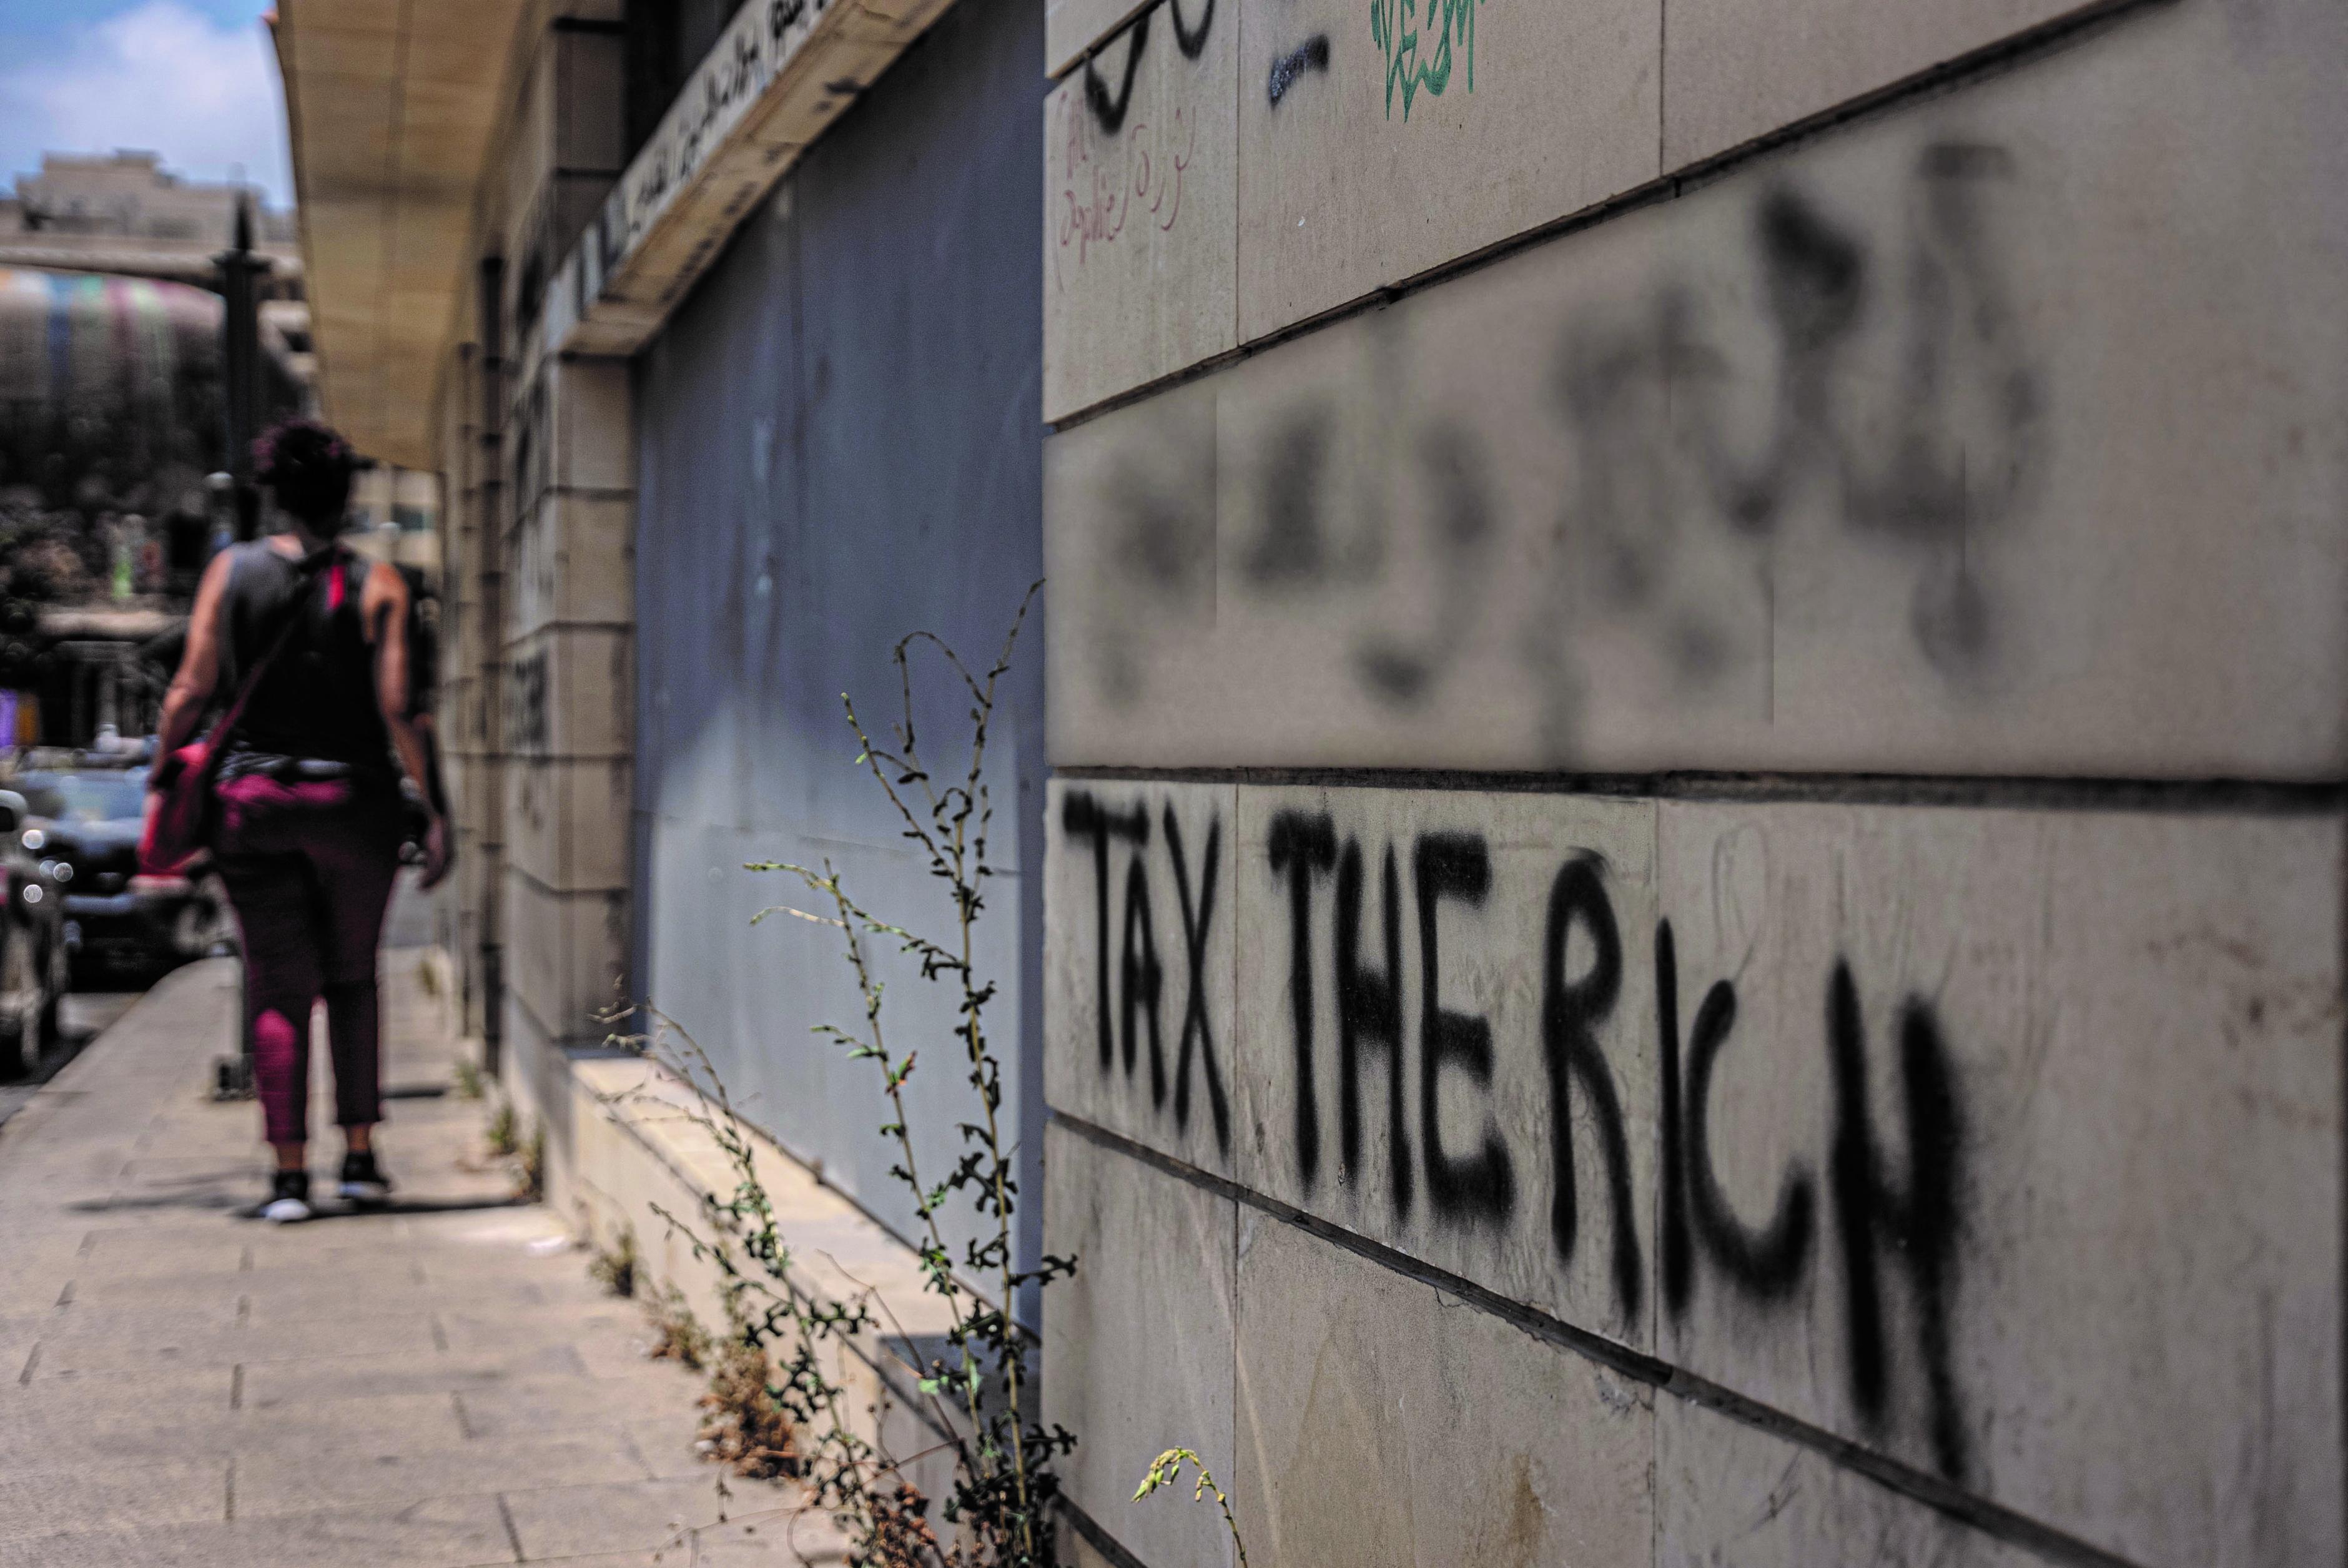 An einer Hauswand in der Innenstadt von Beirut, Libanon, steht das Graffiti „Tax the Rich“ („Besteuert die Reichen“) geschrieben.